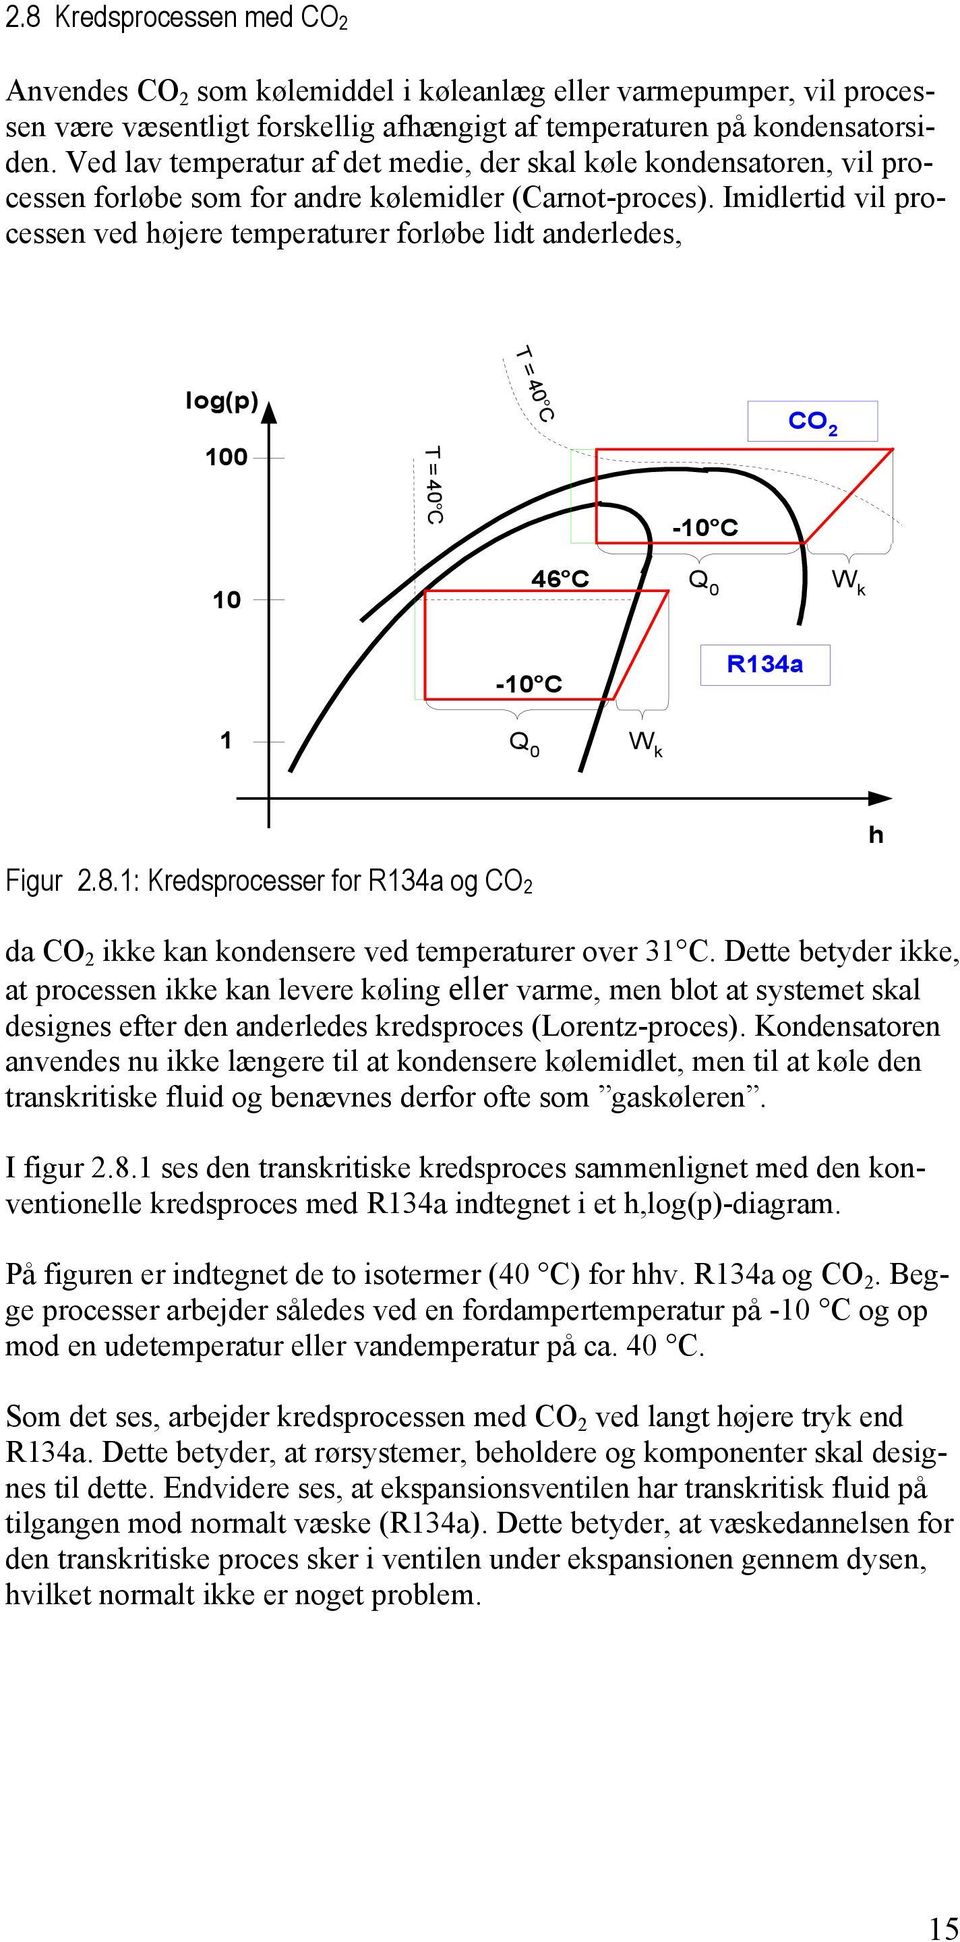 Imidlertid vil processen ved højere temperaturer forløbe lidt anderledes, T = 40 C log(p) 100 CO 2 T = 40 C -10 C 10 46 C Q 0 W k -10 C R134a 1 Q 0 W k h Figur 2.8.